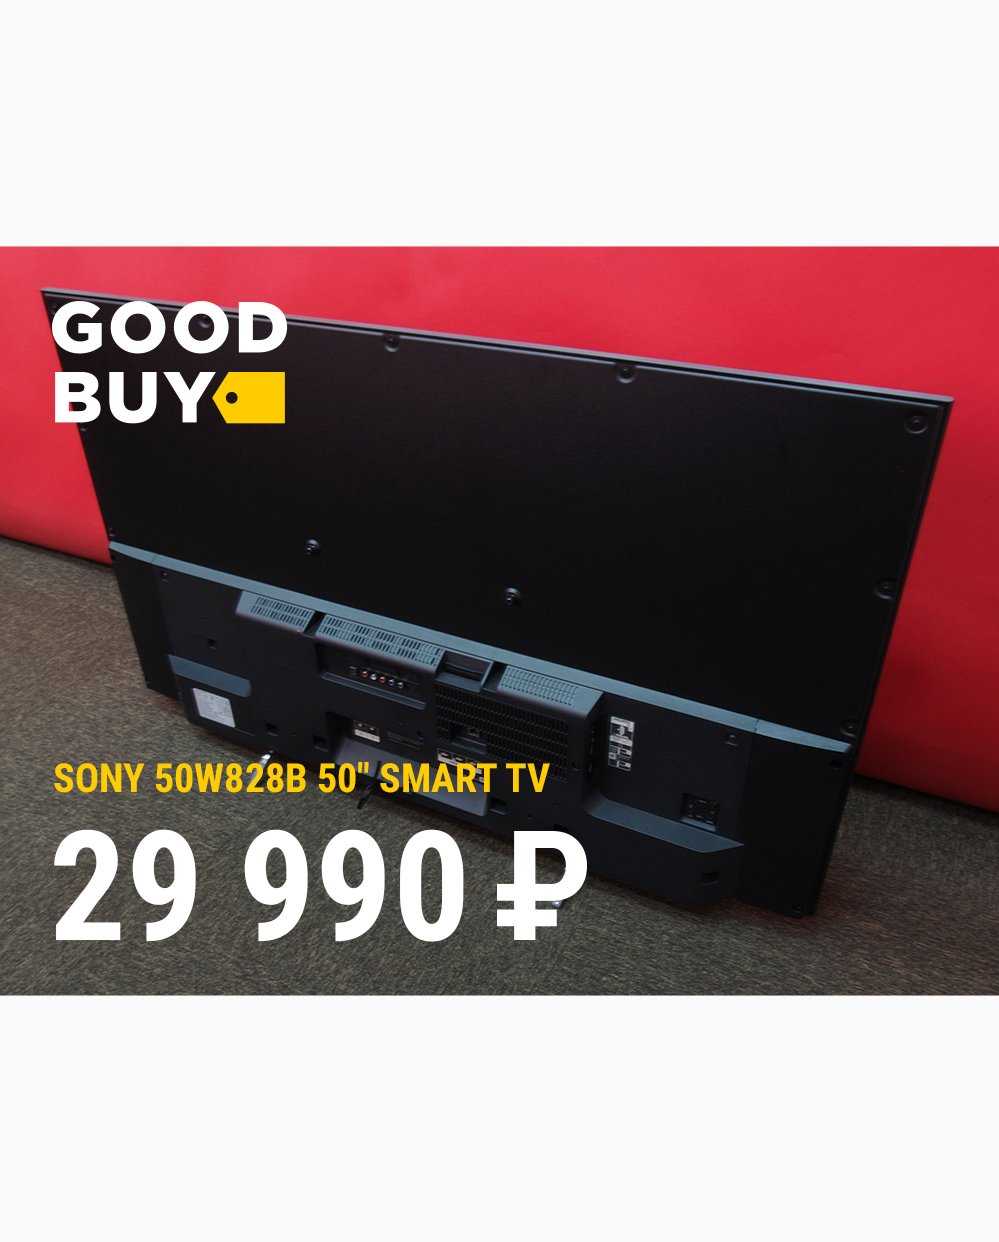 Sony kdl-50w828b характеристики